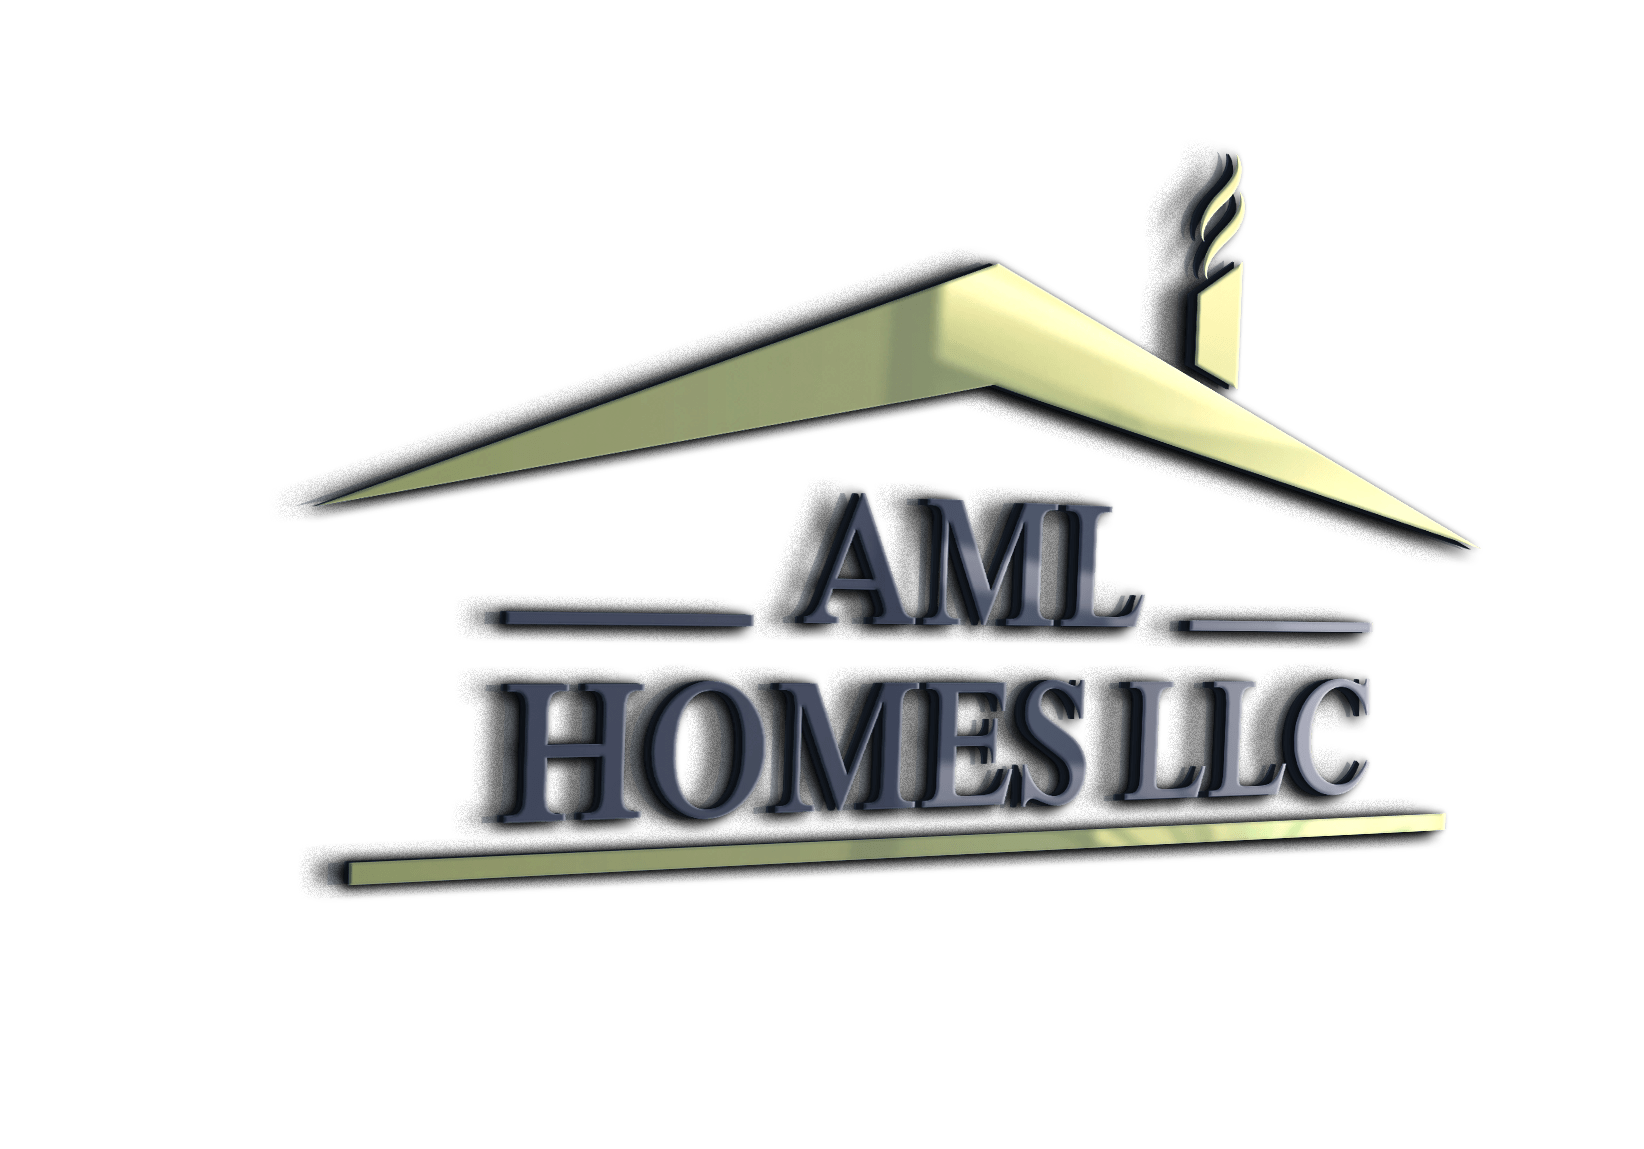 AML Homes LLC